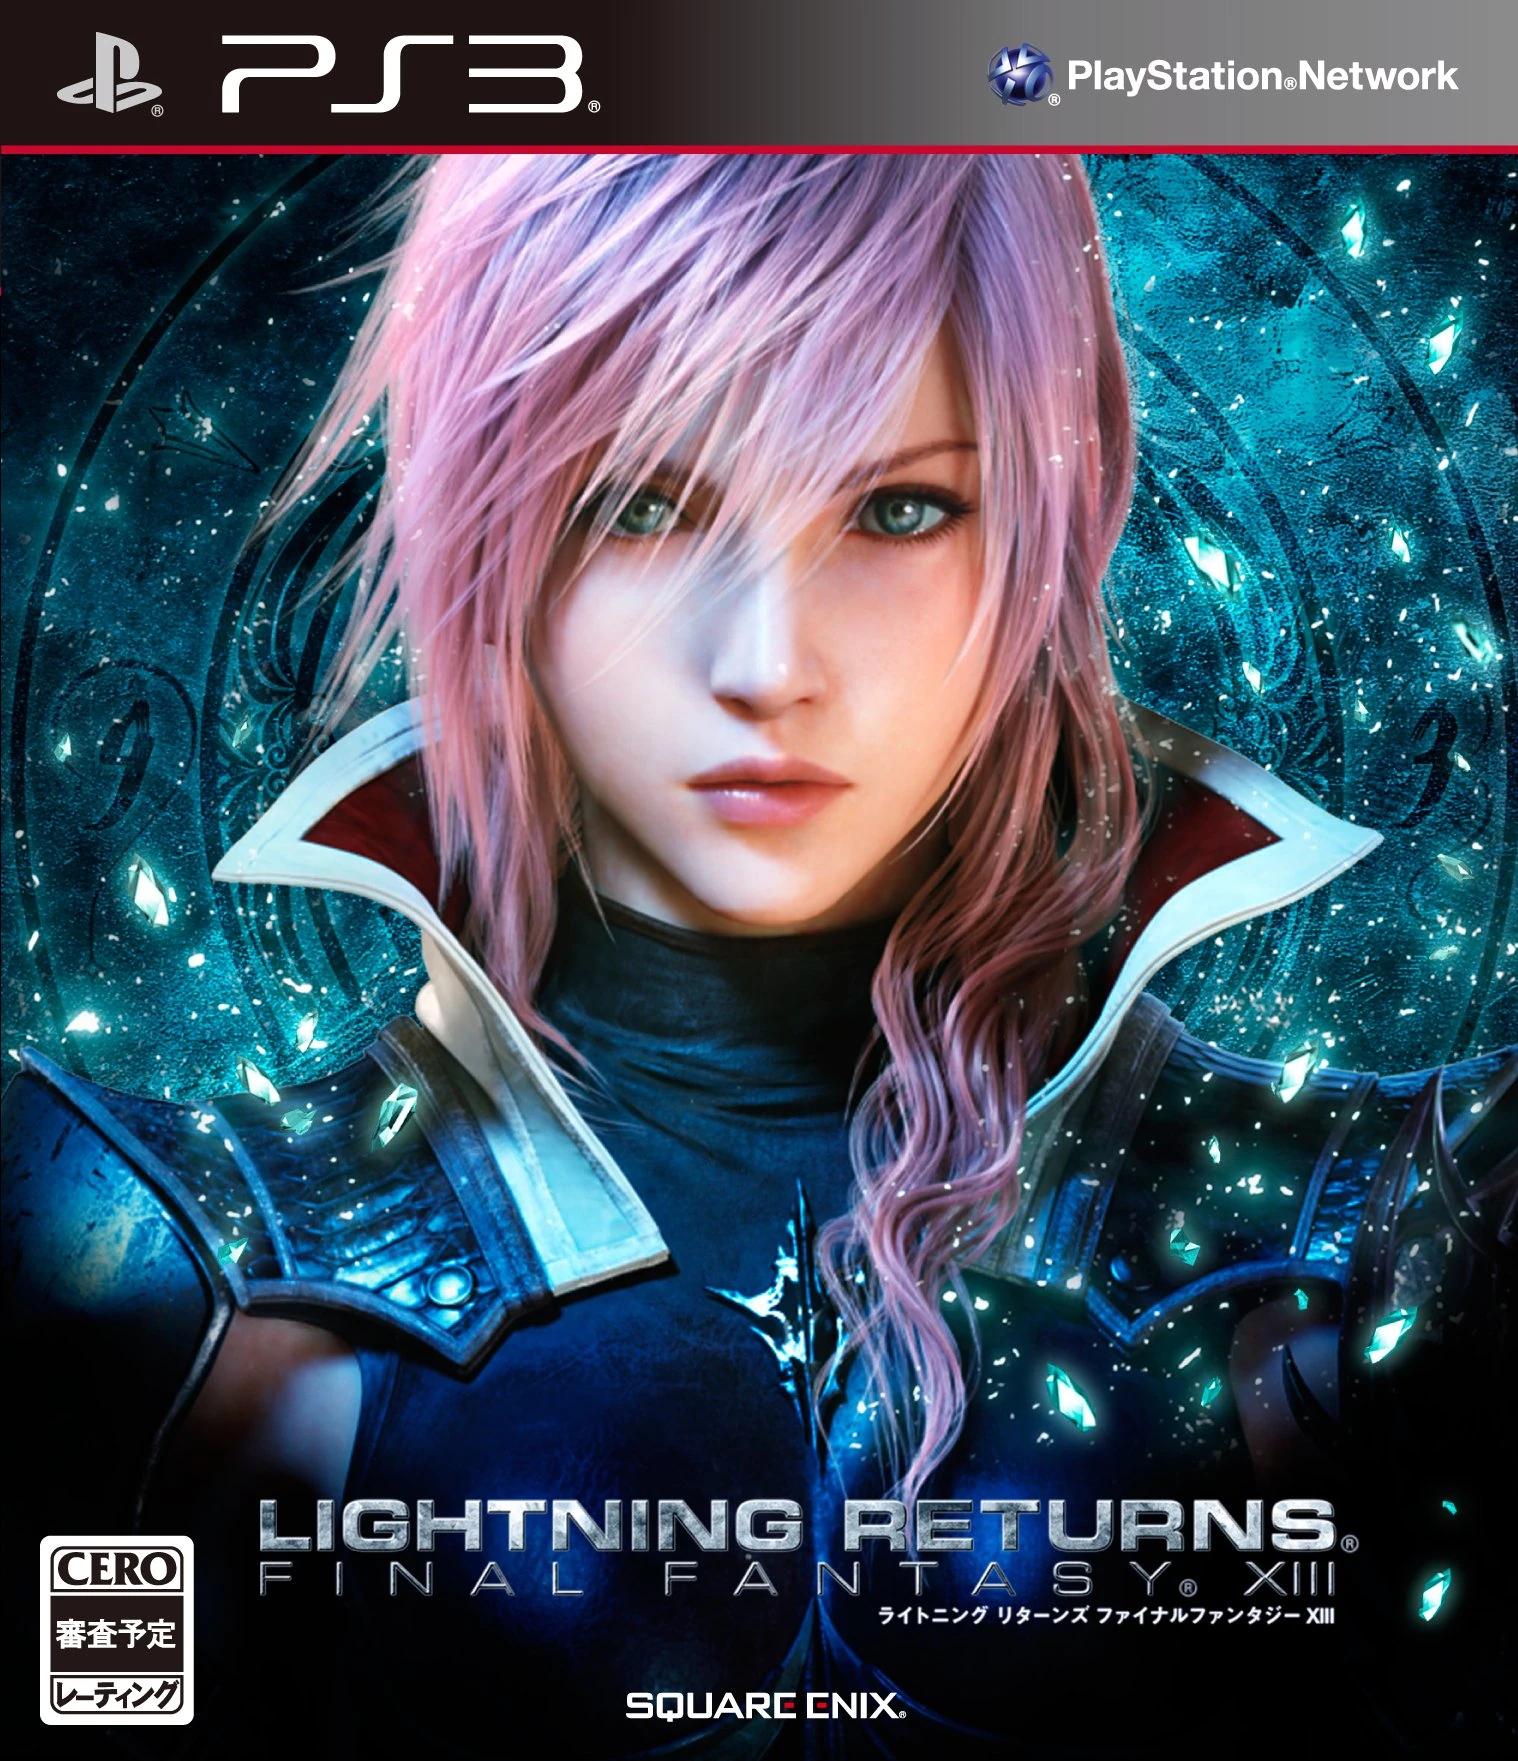 Lightning Returns - Final Fantasy XIII - Boxart PS3 001